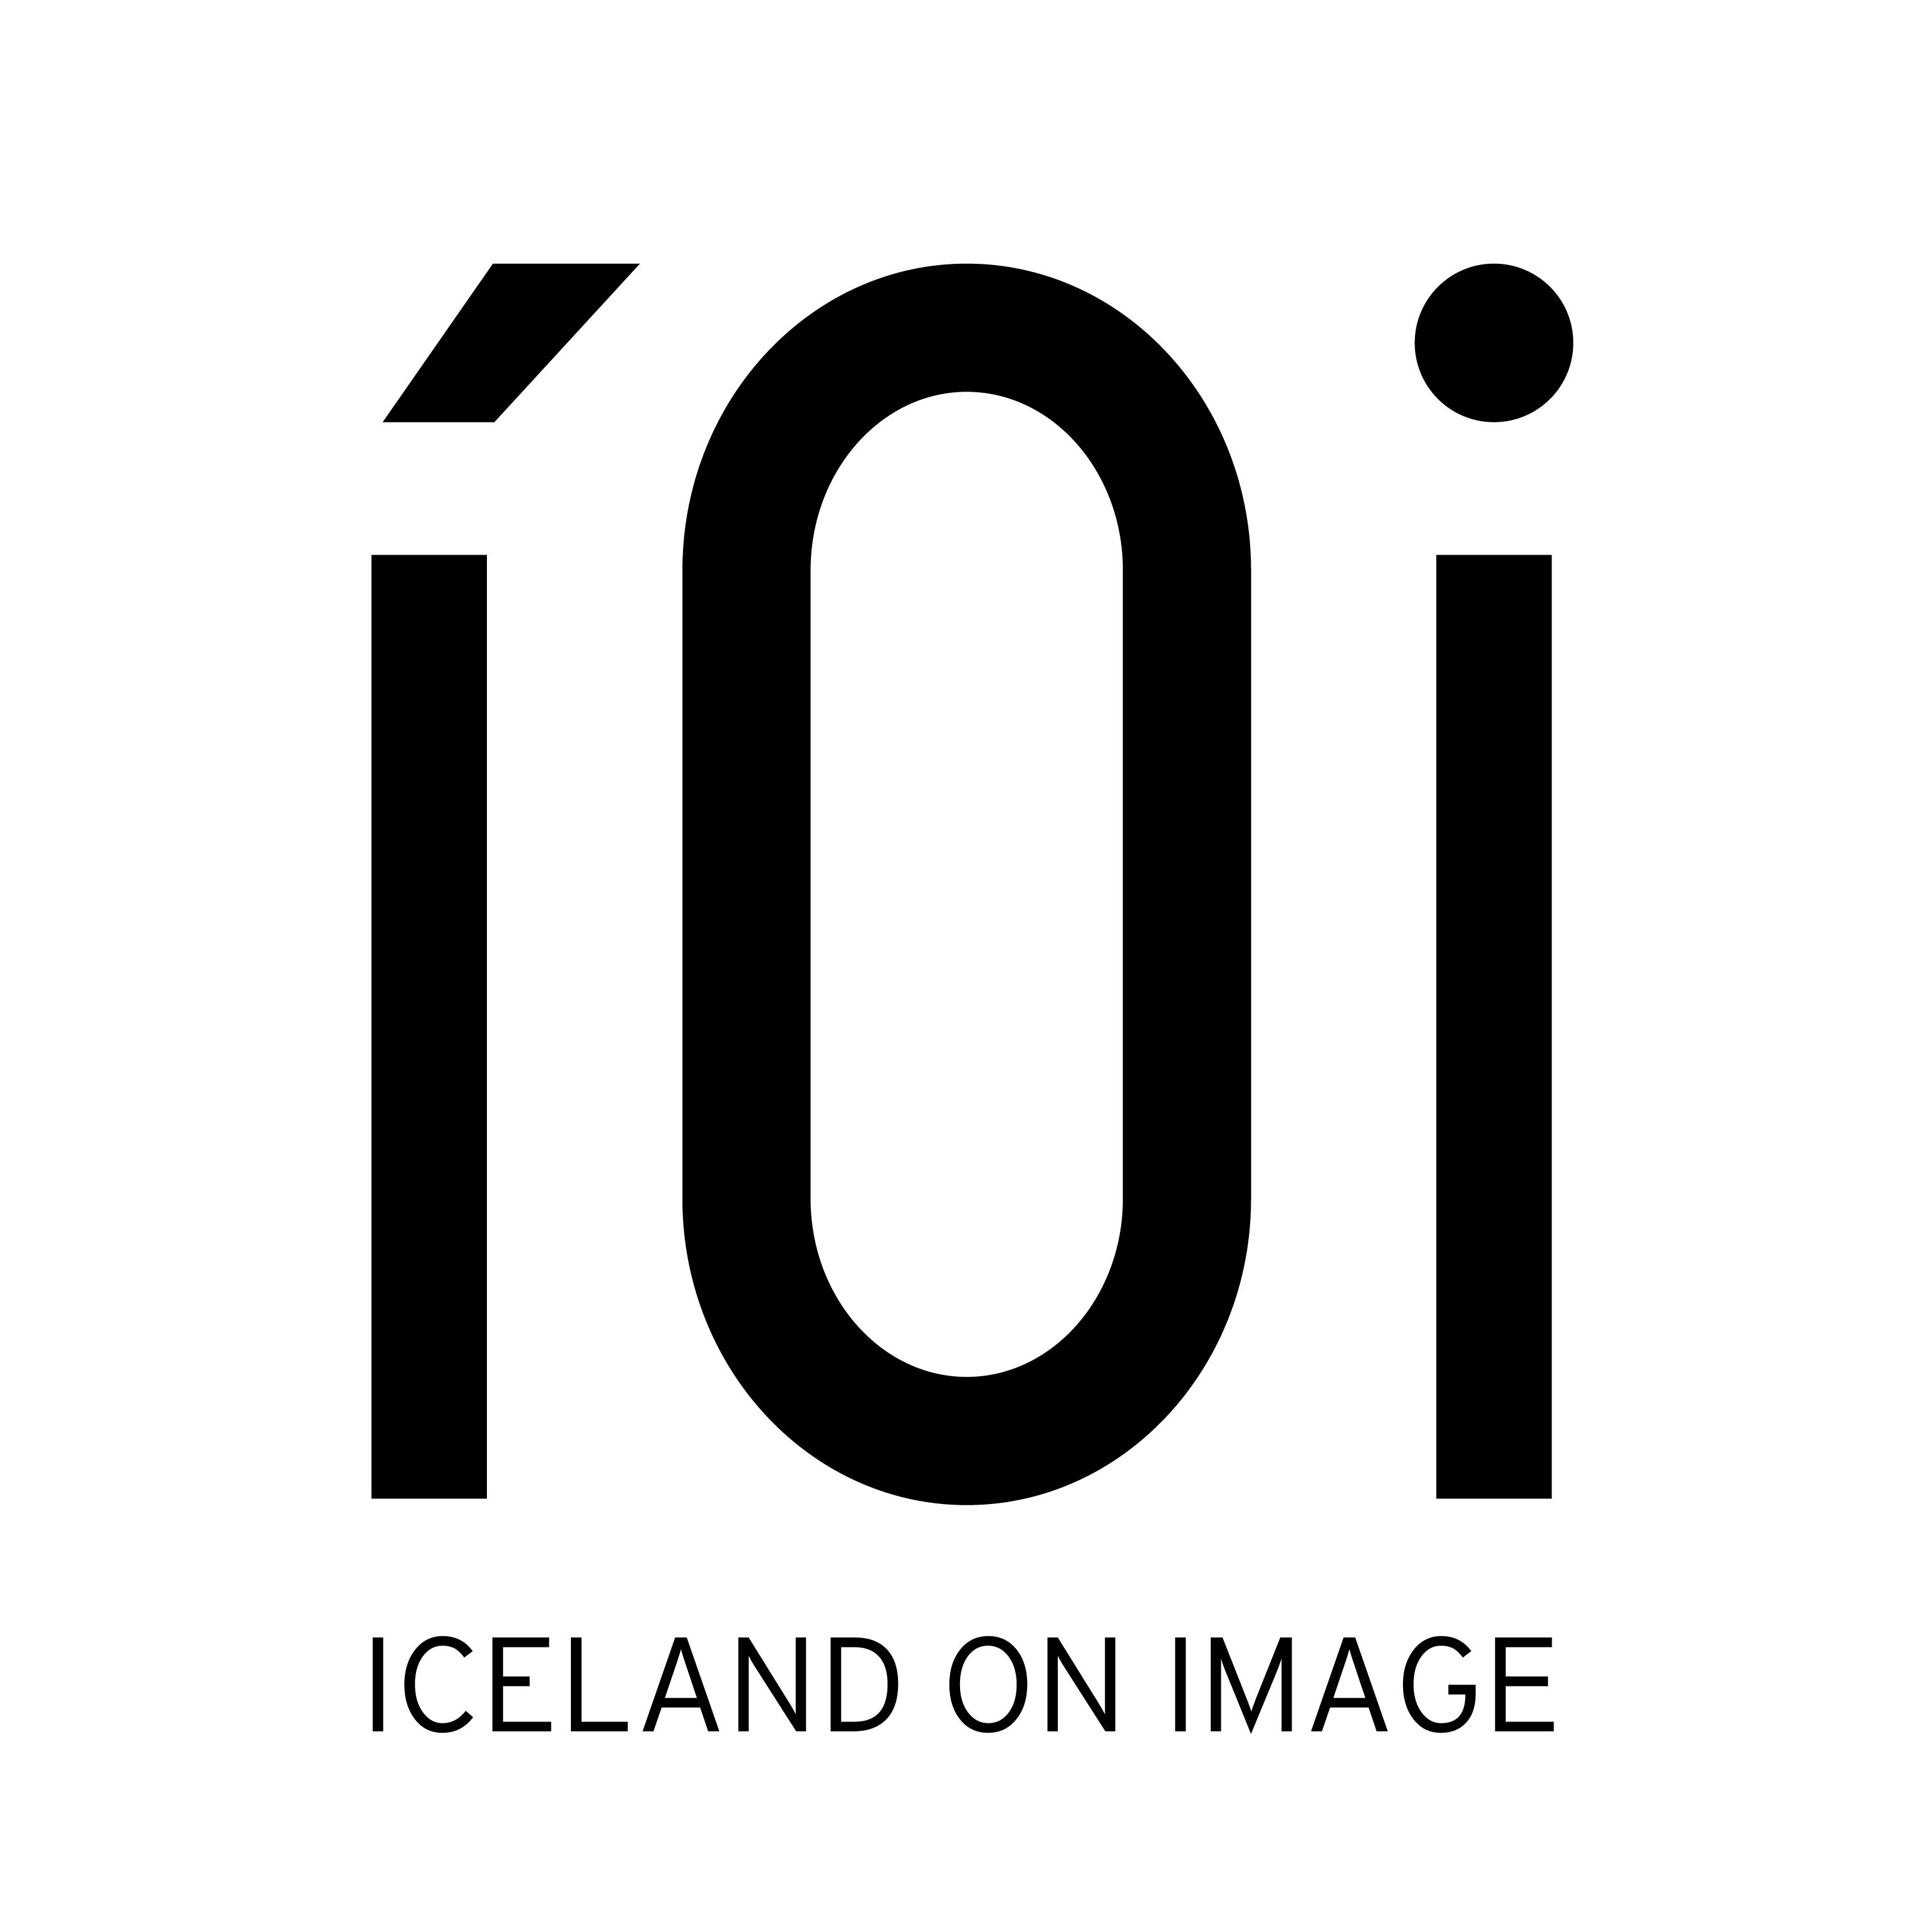 ICELAND ON IMAGE